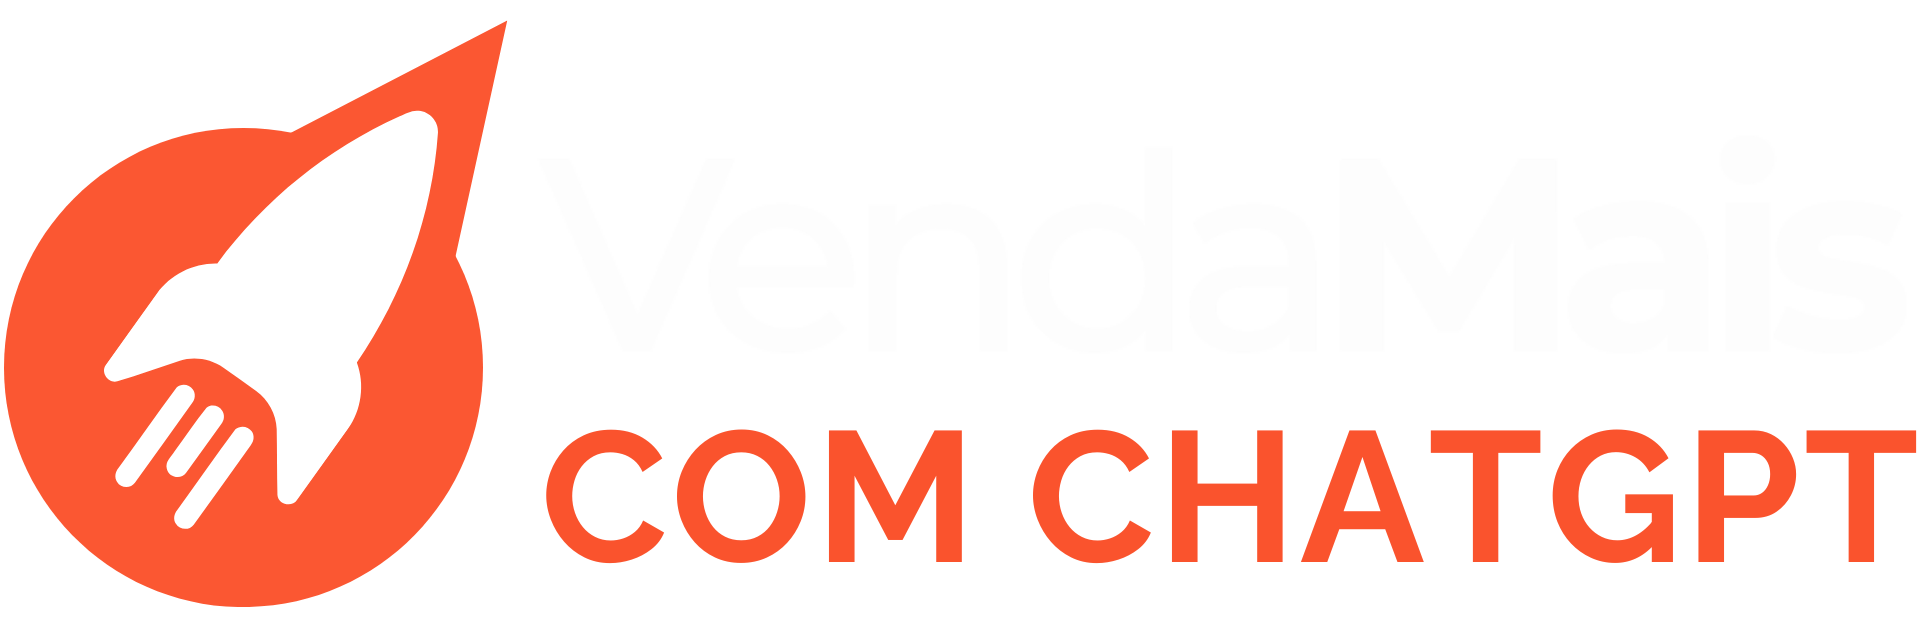 VendaMais com ChatGPT - curso online